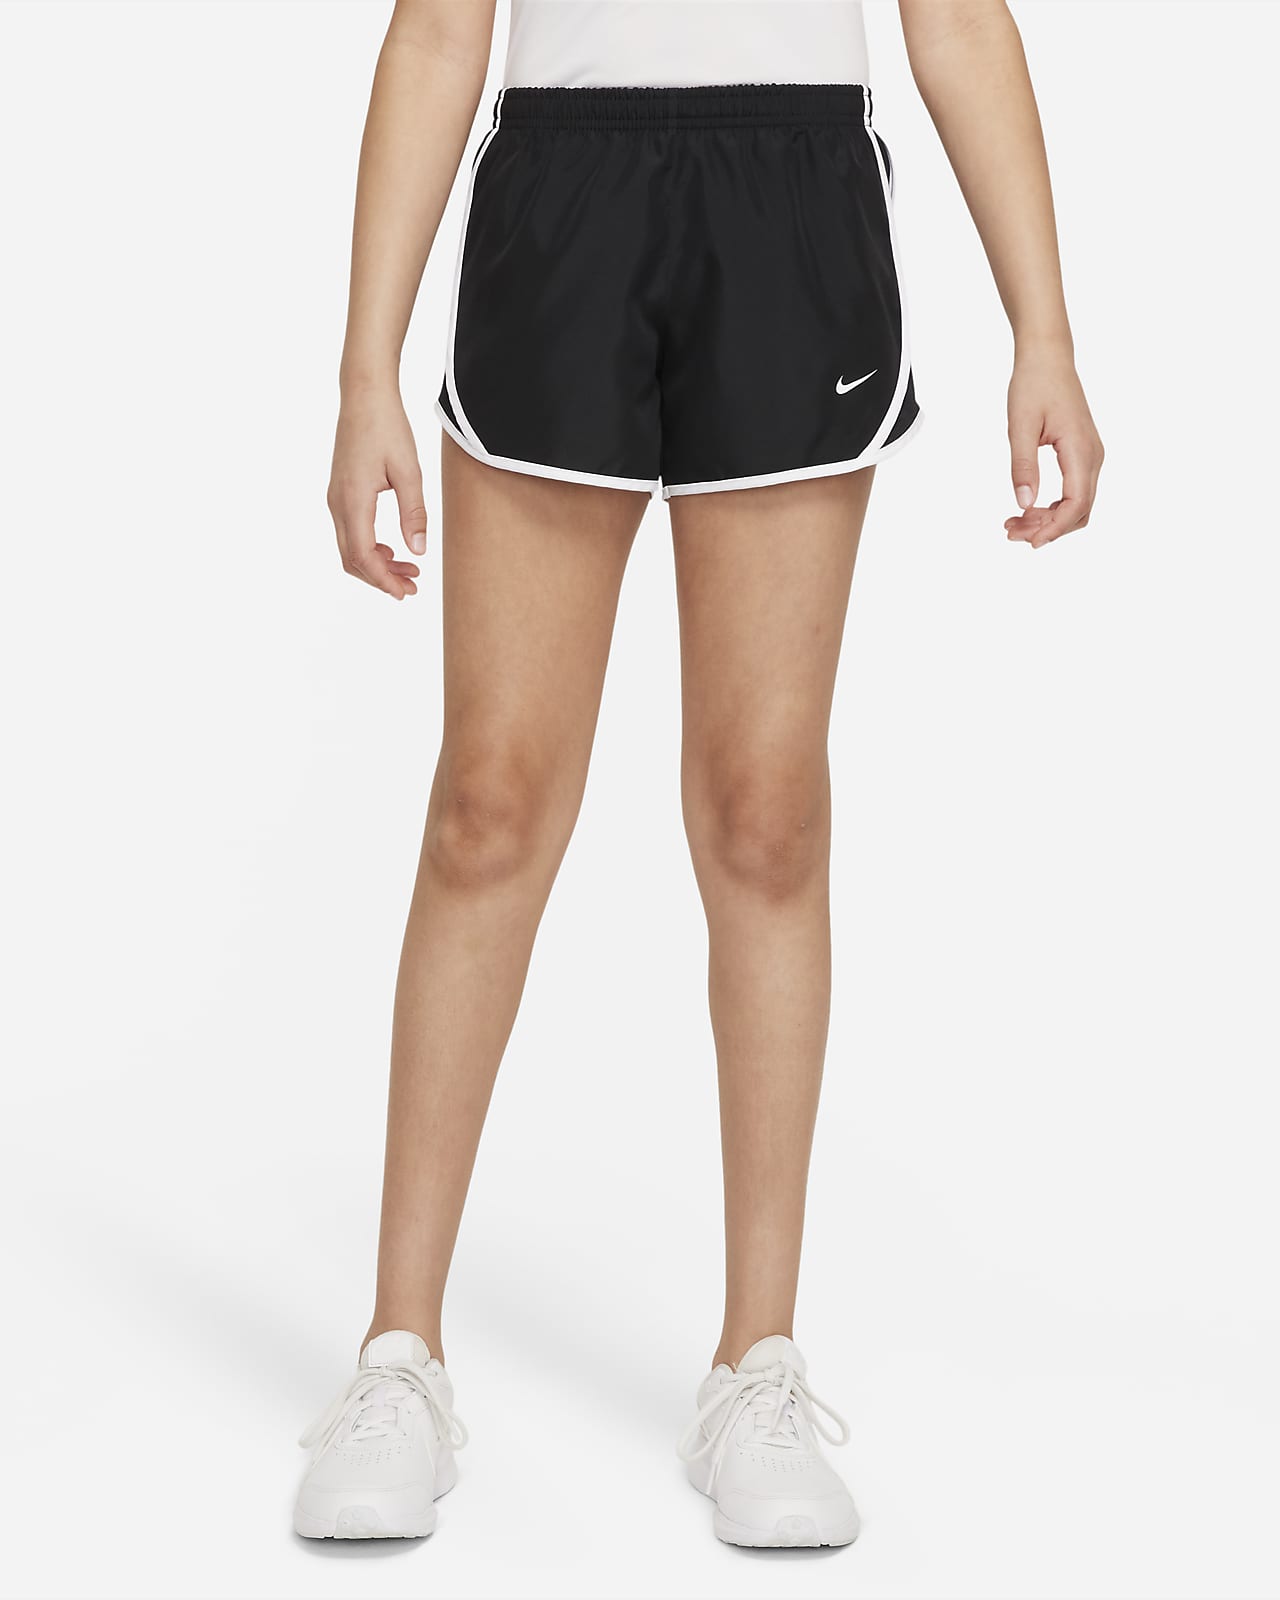 กางเกงวิ่งขาสั้น Dri-FIT เด็กโต Nike Tempo (หญิง)